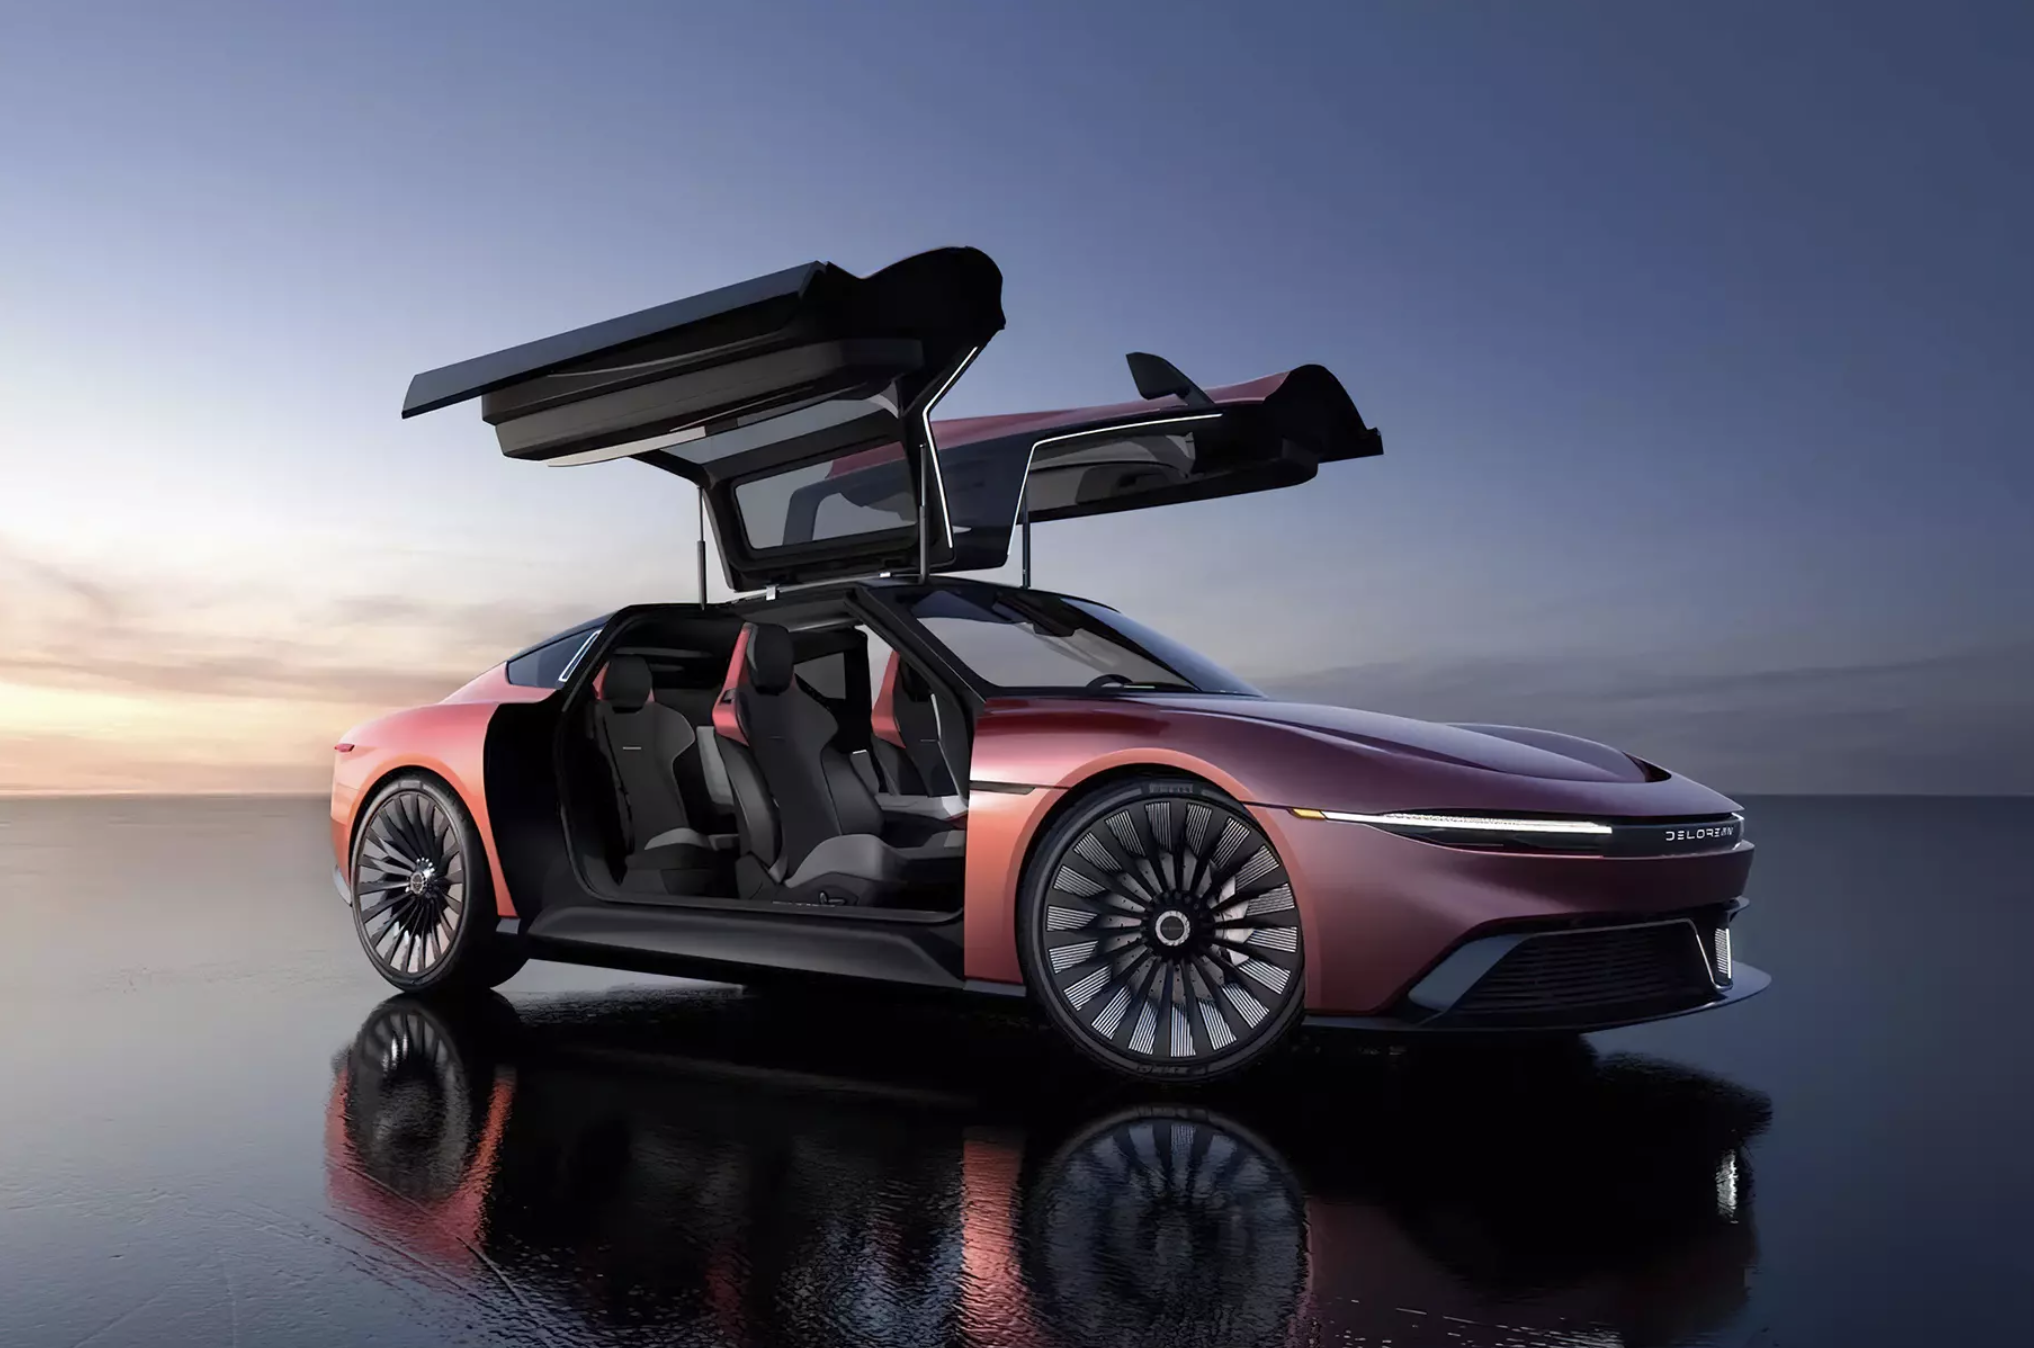 DeLorean aus "Zurück in die Zukunft" hat eine neue Version erhalten: Jetzt ist es ein Elektroauto mit einer Reichweite von bis zu 482 km und einer Beschleunigung auf "Hunderte" in 3,4 Sekunden